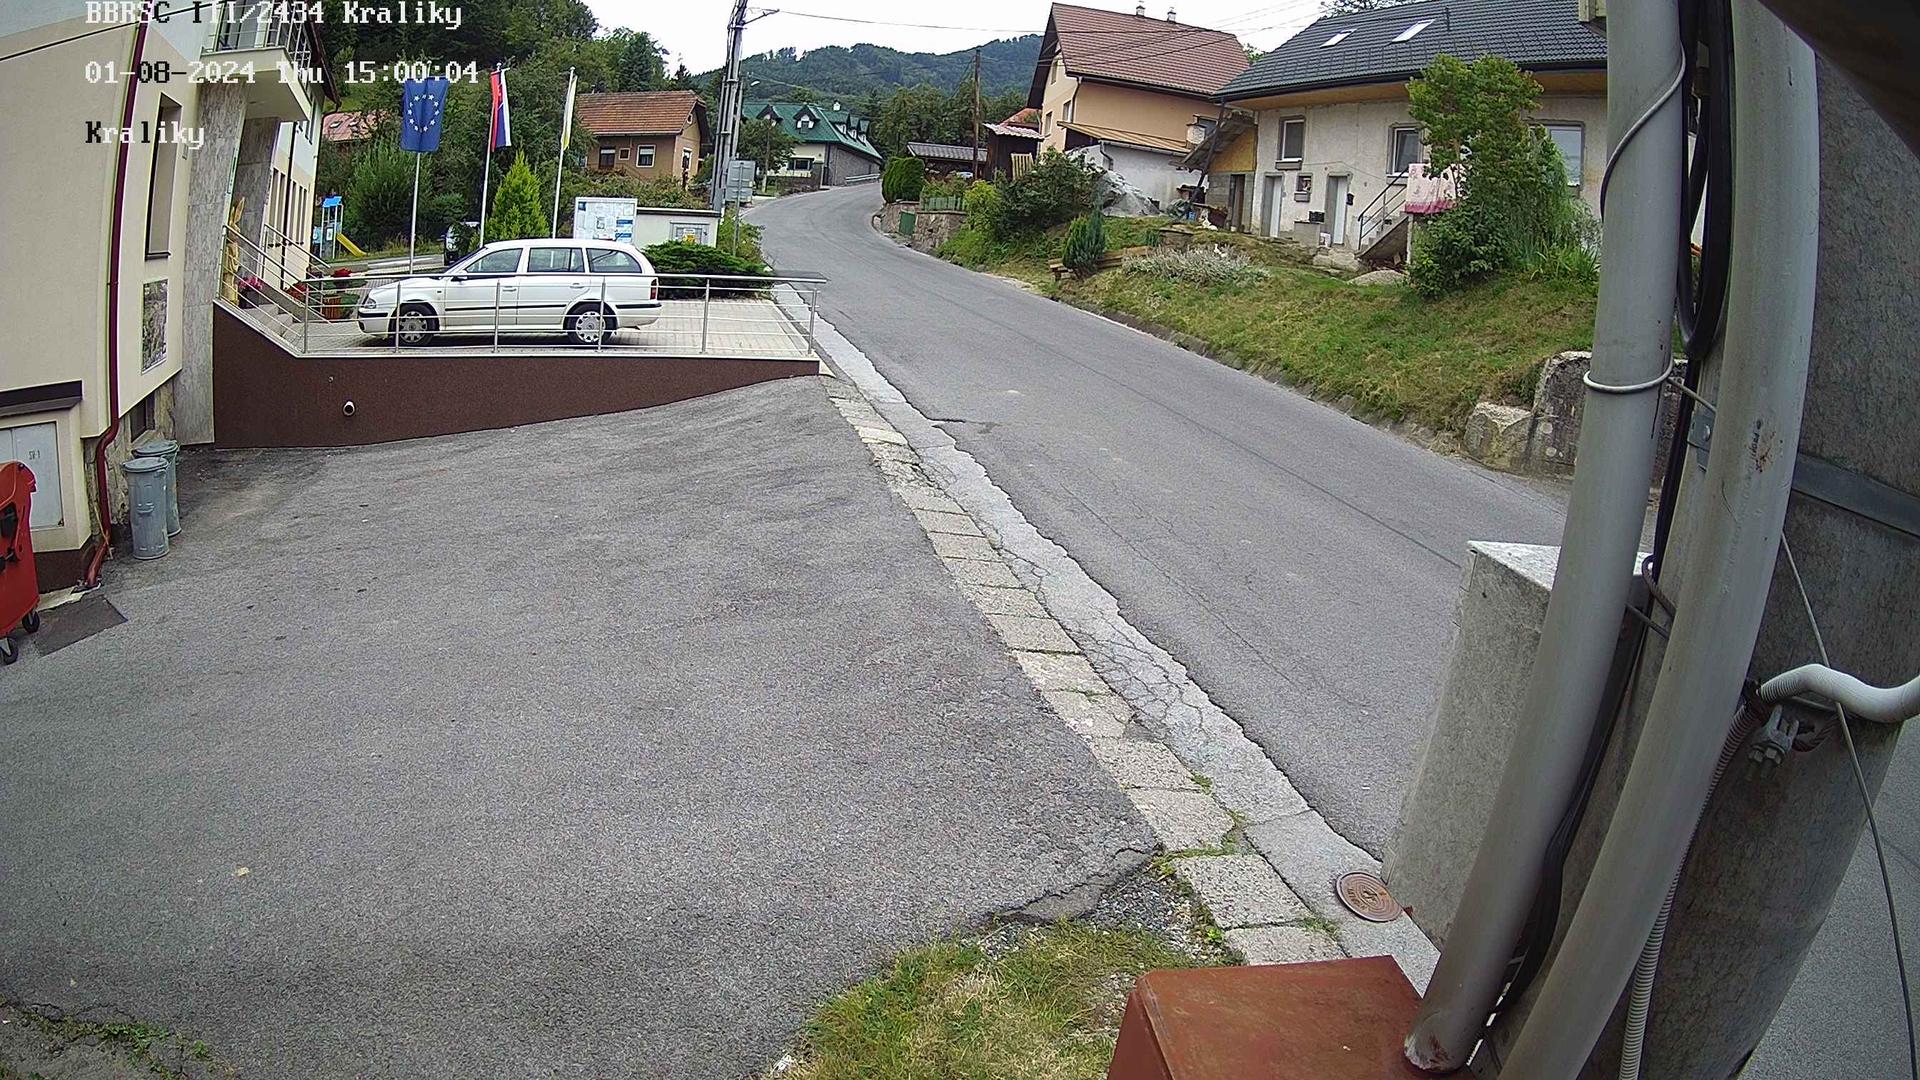 Traffic Cam District of Banská Bystrica: Králiky